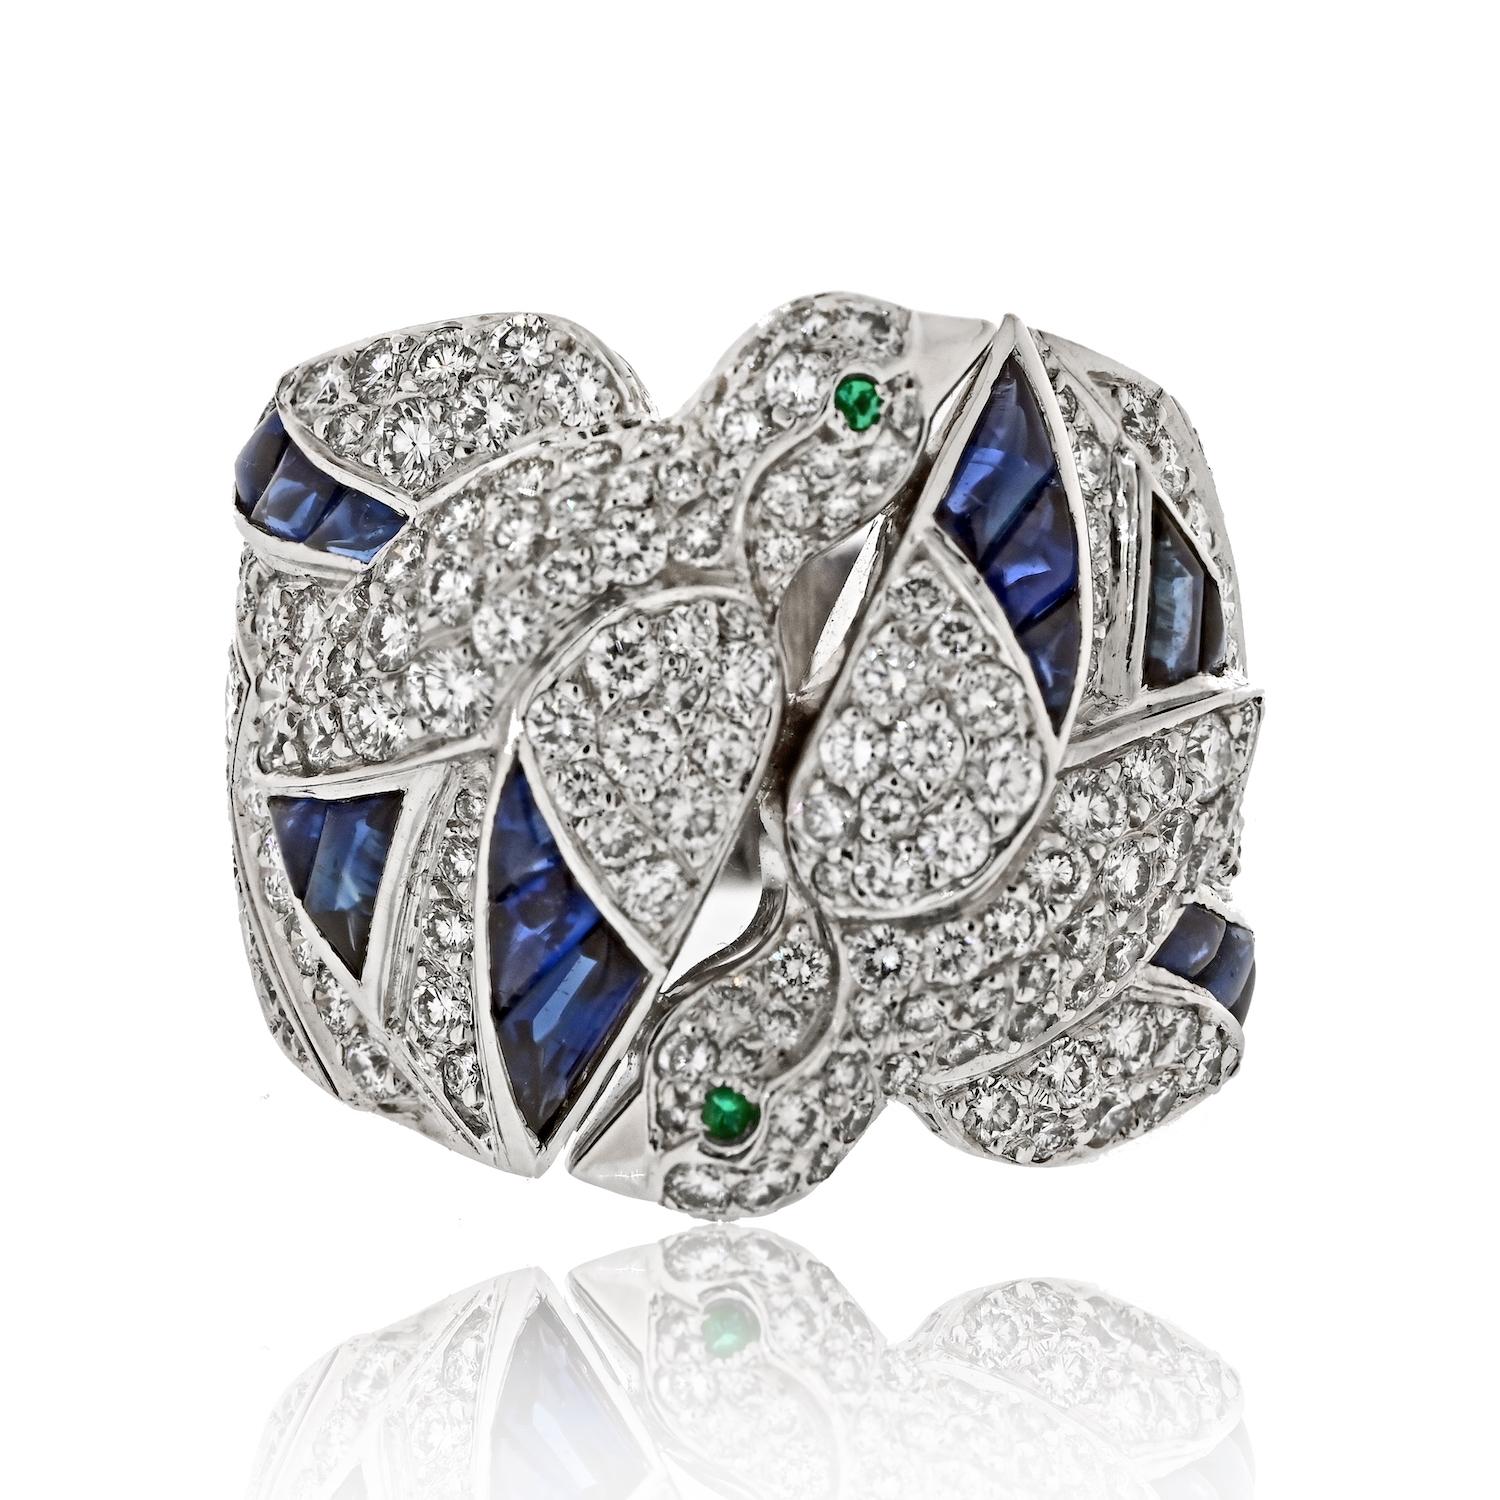 Treten Sie ein in die bezaubernde Welt von Cartier mit dem exquisiten Cartier Les Oiseaux Libérés Diamantring, einer seltenen Kostbarkeit, die die Essenz von Eleganz und Anmut einfängt. 

Dieser sorgfältig aus 18 Karat Weißgold gefertigte Ring zeigt